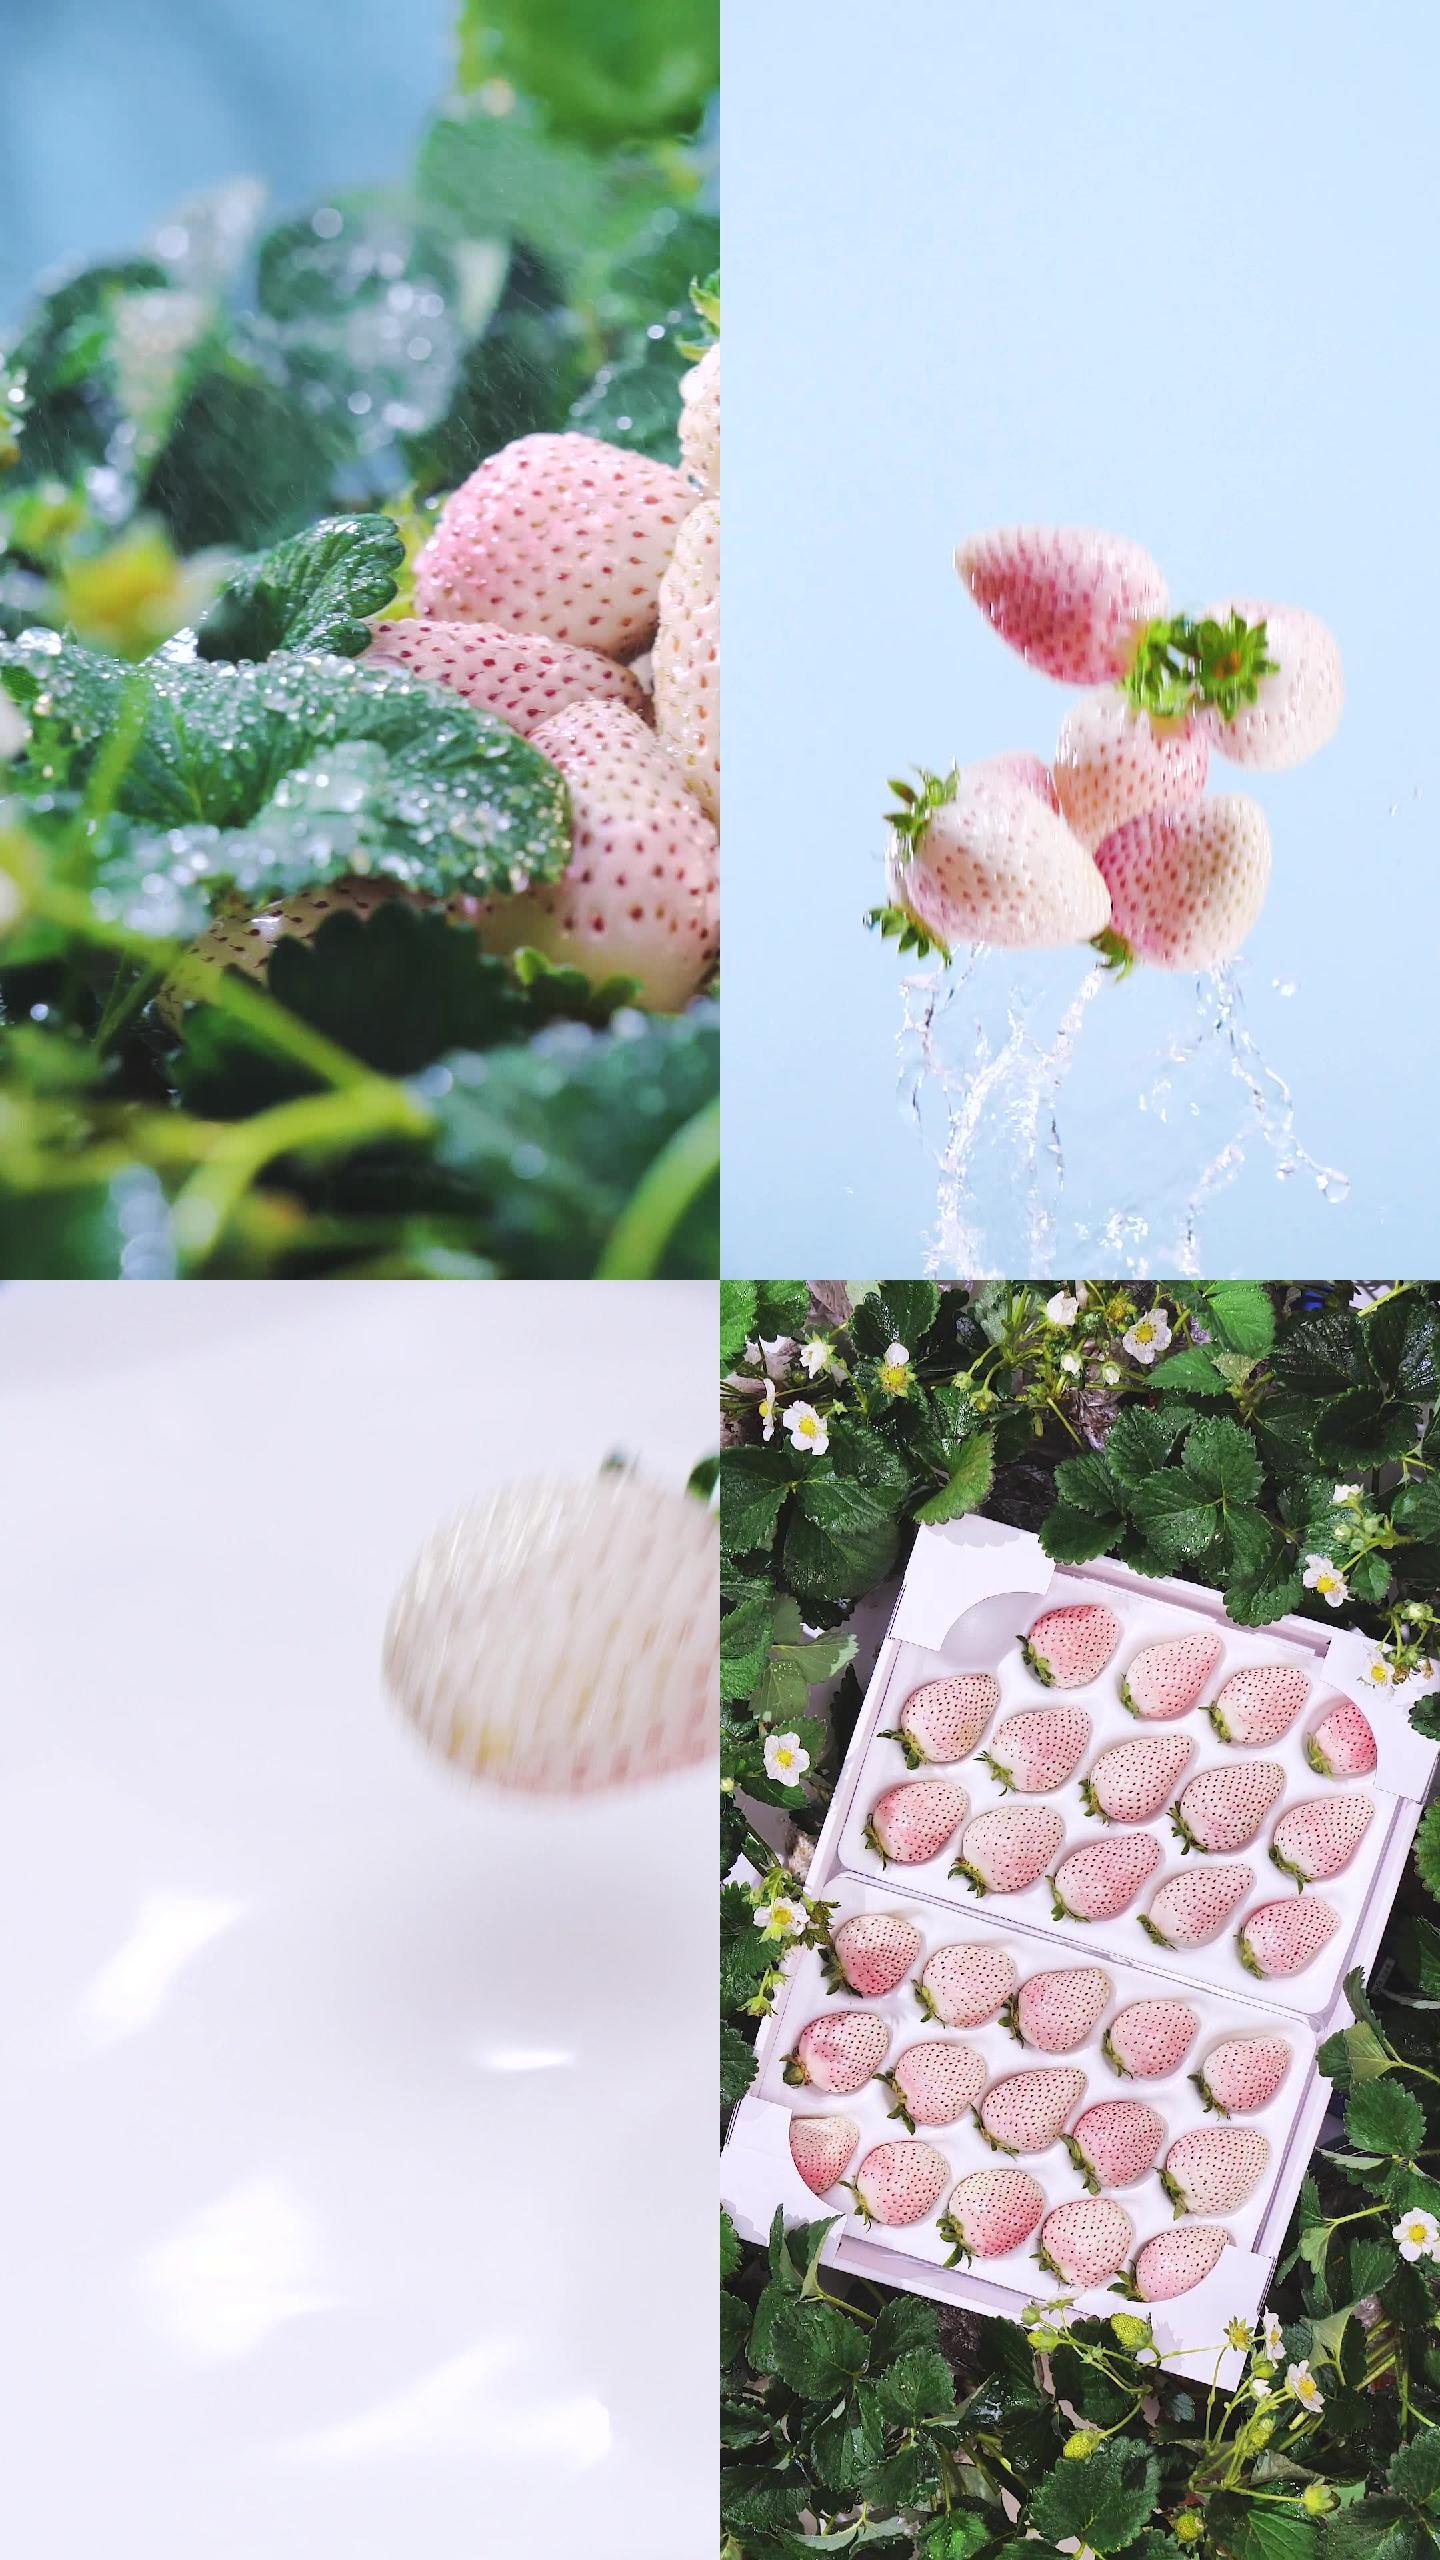 白草莓淡雪水果高清日本小清新广告原创视频